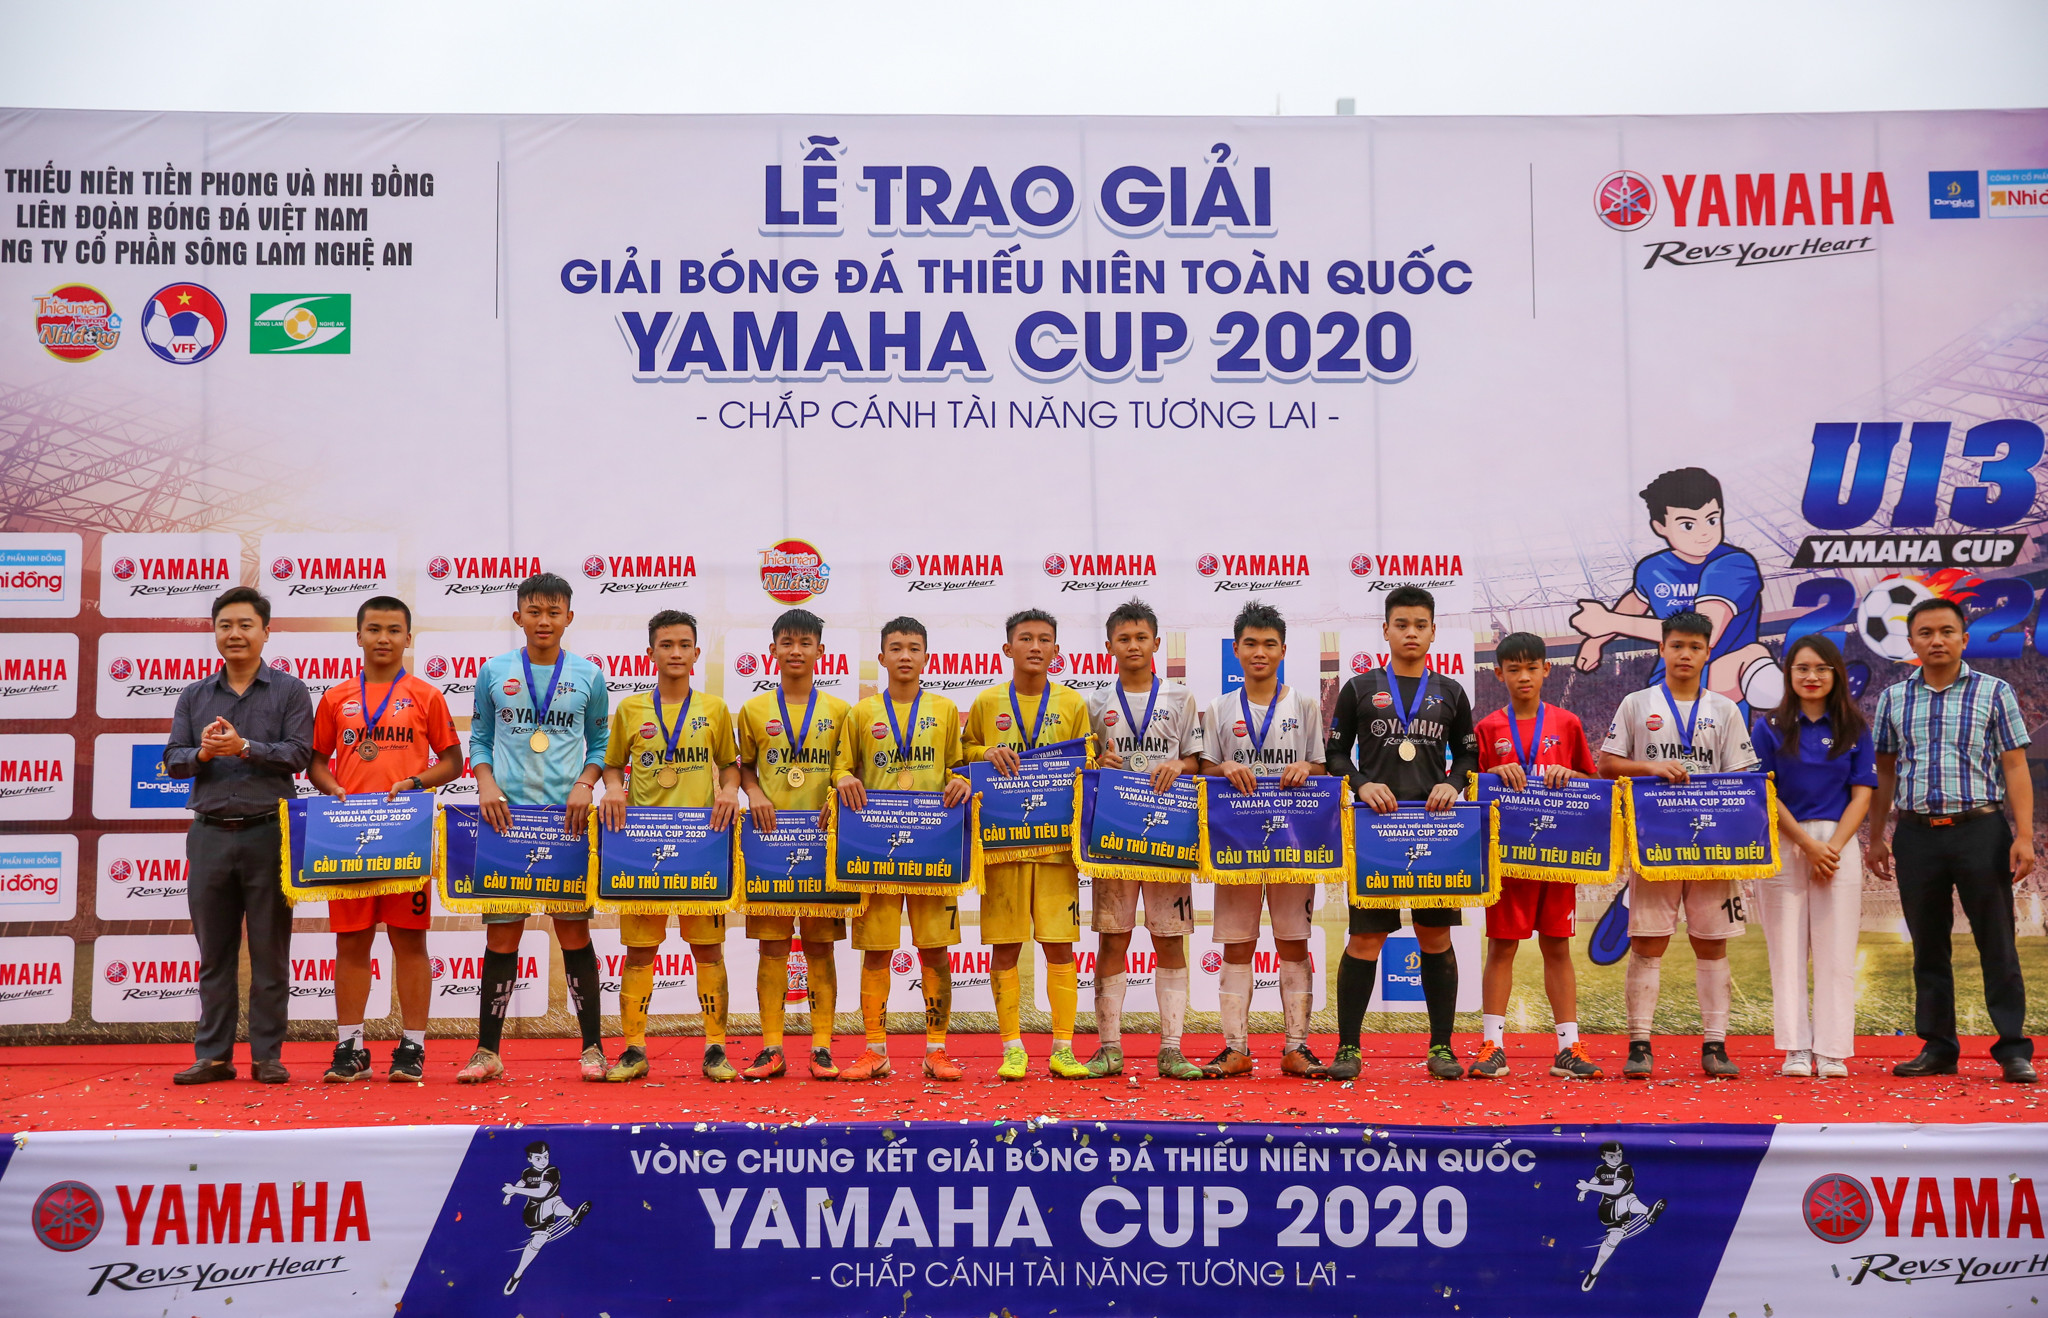 Đội hình tiêu biểu của mùa giải có 5 cầu thủ SLNA bao gồm: Trần Quốc Hòa, Vương Văn Tùng, Nguyễn Anh Dũng, Vương Quốc Dũng và thủ môn Nguyễn Ngọc Bảo. Ảnh: Đức Anh